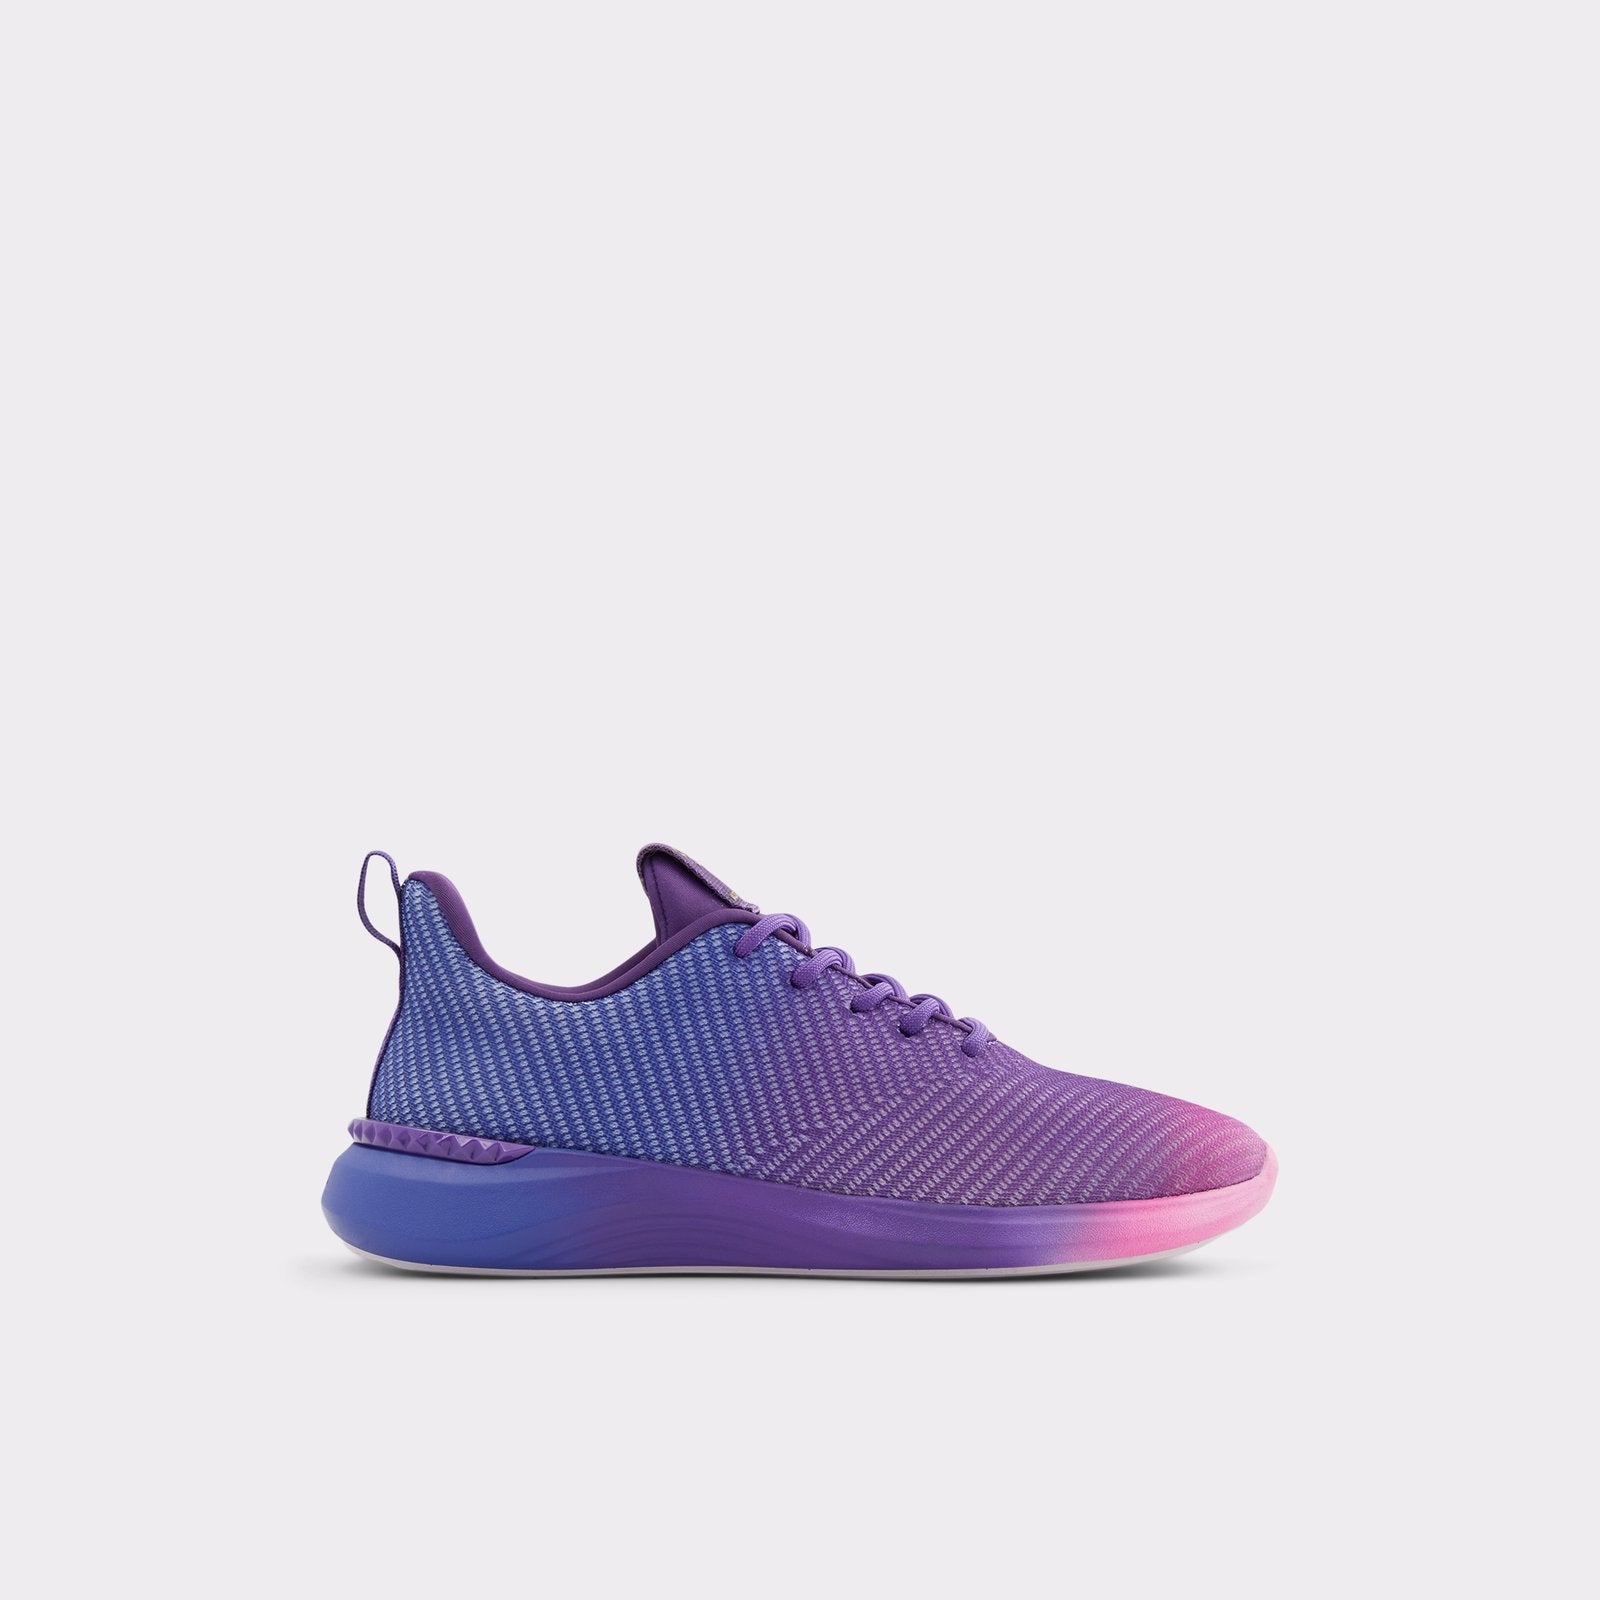 Rppl-dxl Women Shoes - Multicolor - ALDO KSA